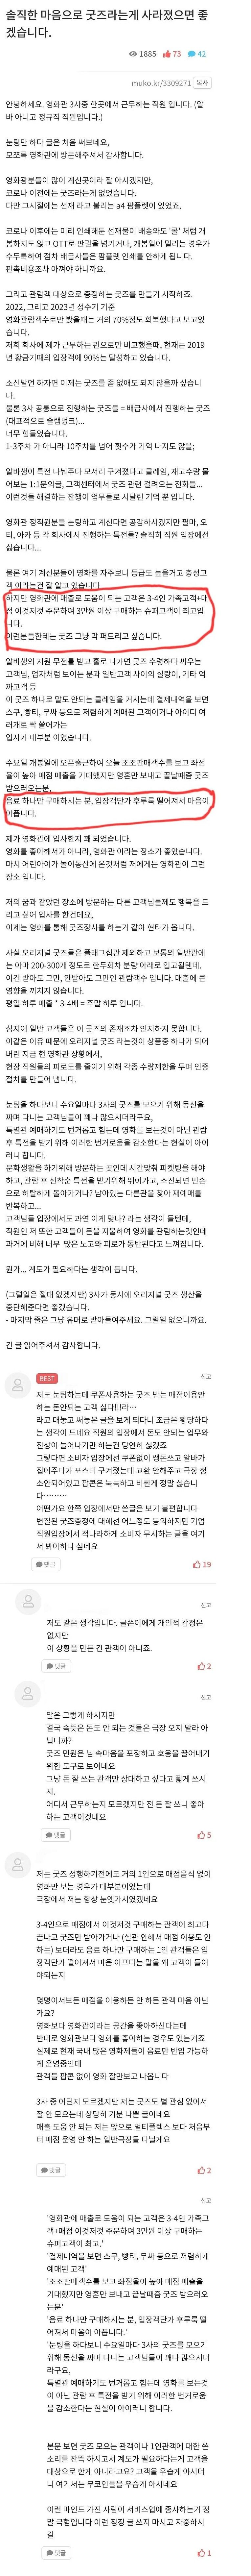 영화 커뮤니티에 올라온 극장 3사 정직원의 한탄글